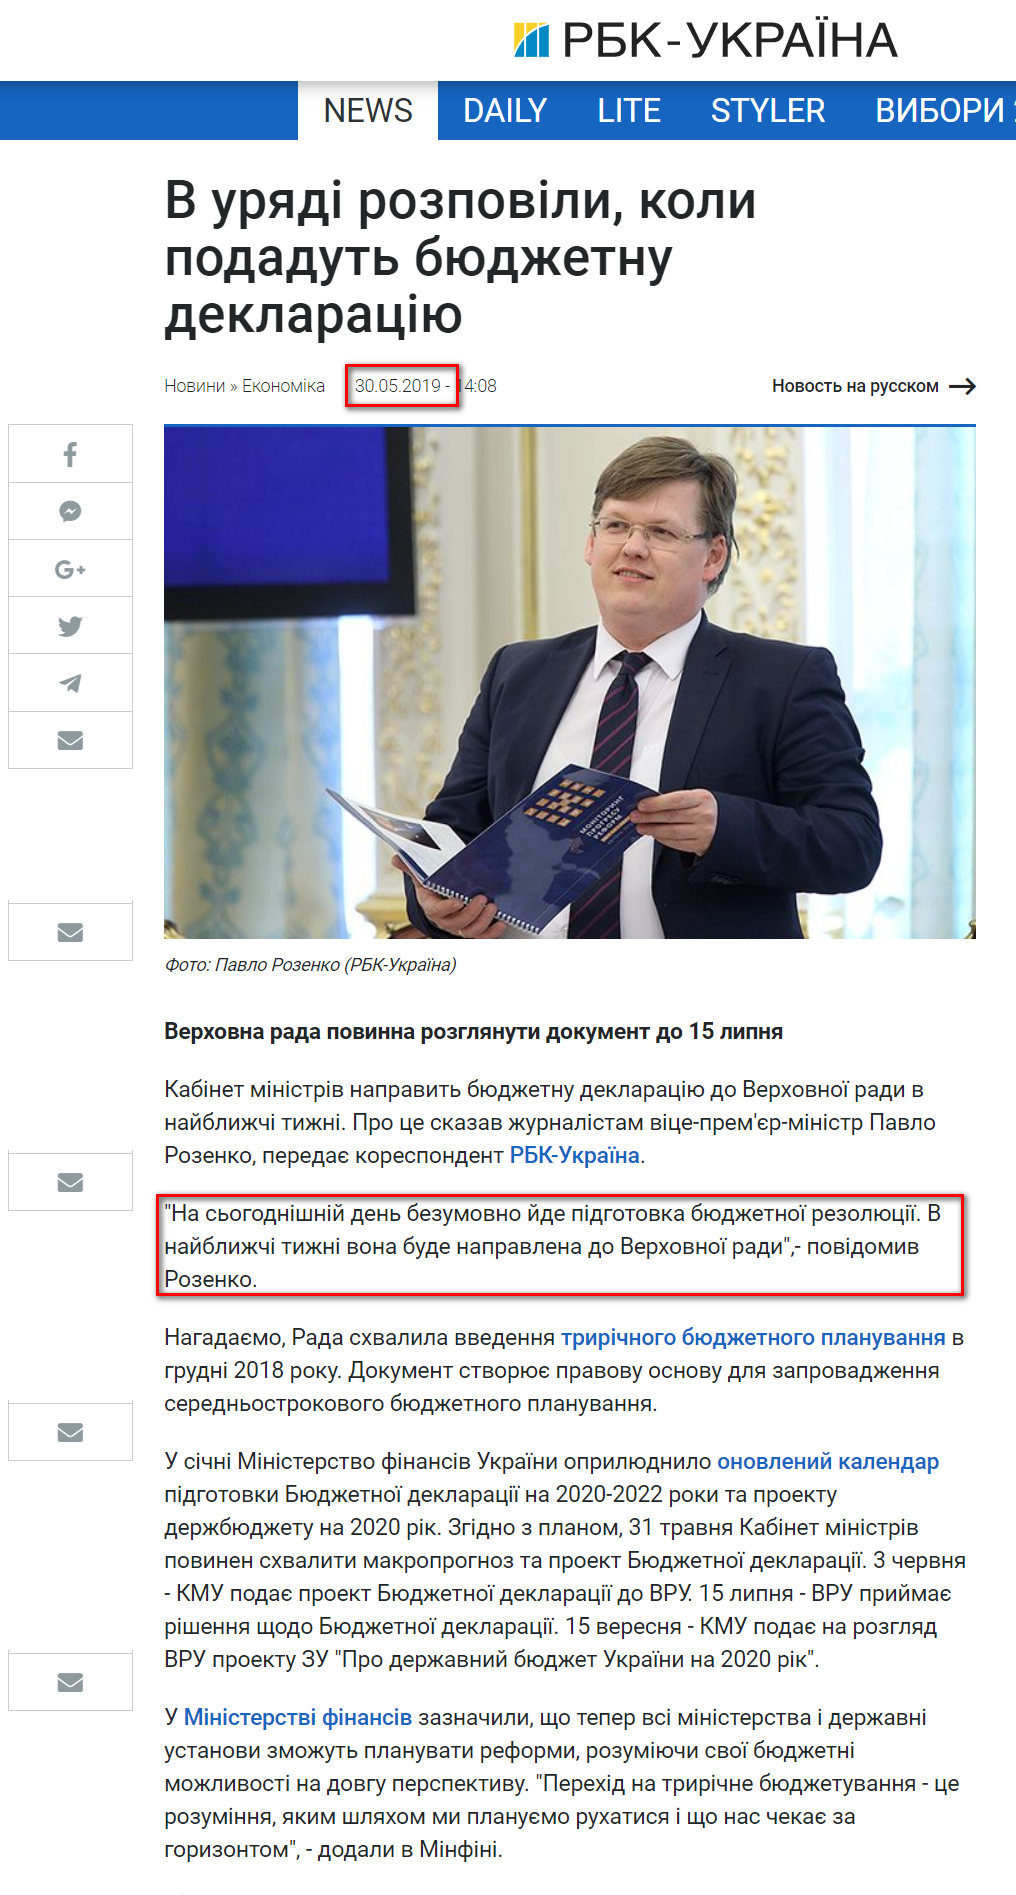 https://www.rbc.ua/ukr/news/pravitelstvo-vneset-byudzhetnuyu-deklaratsiyu-1559214488.html